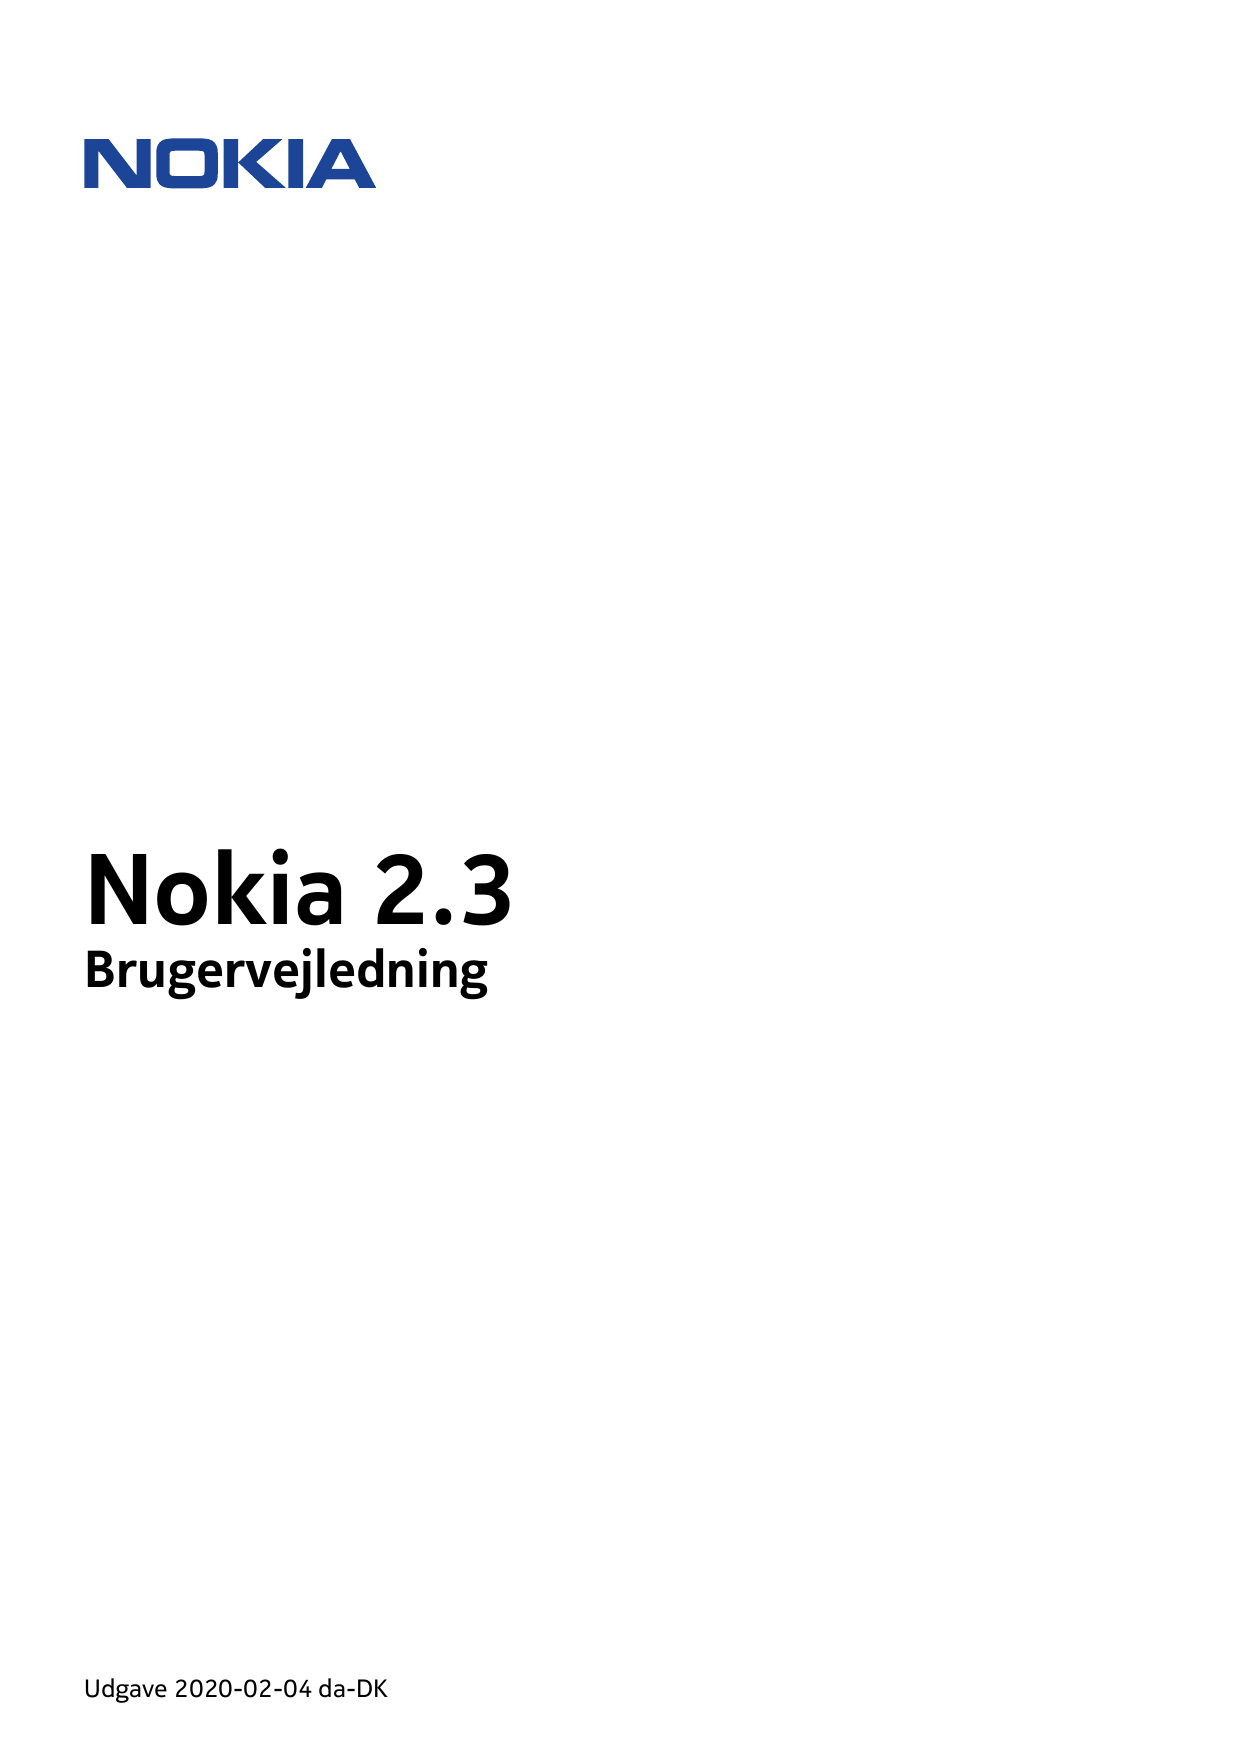 Nokia 2.3BrugervejledningUdgave 2020-02-04 da-DK